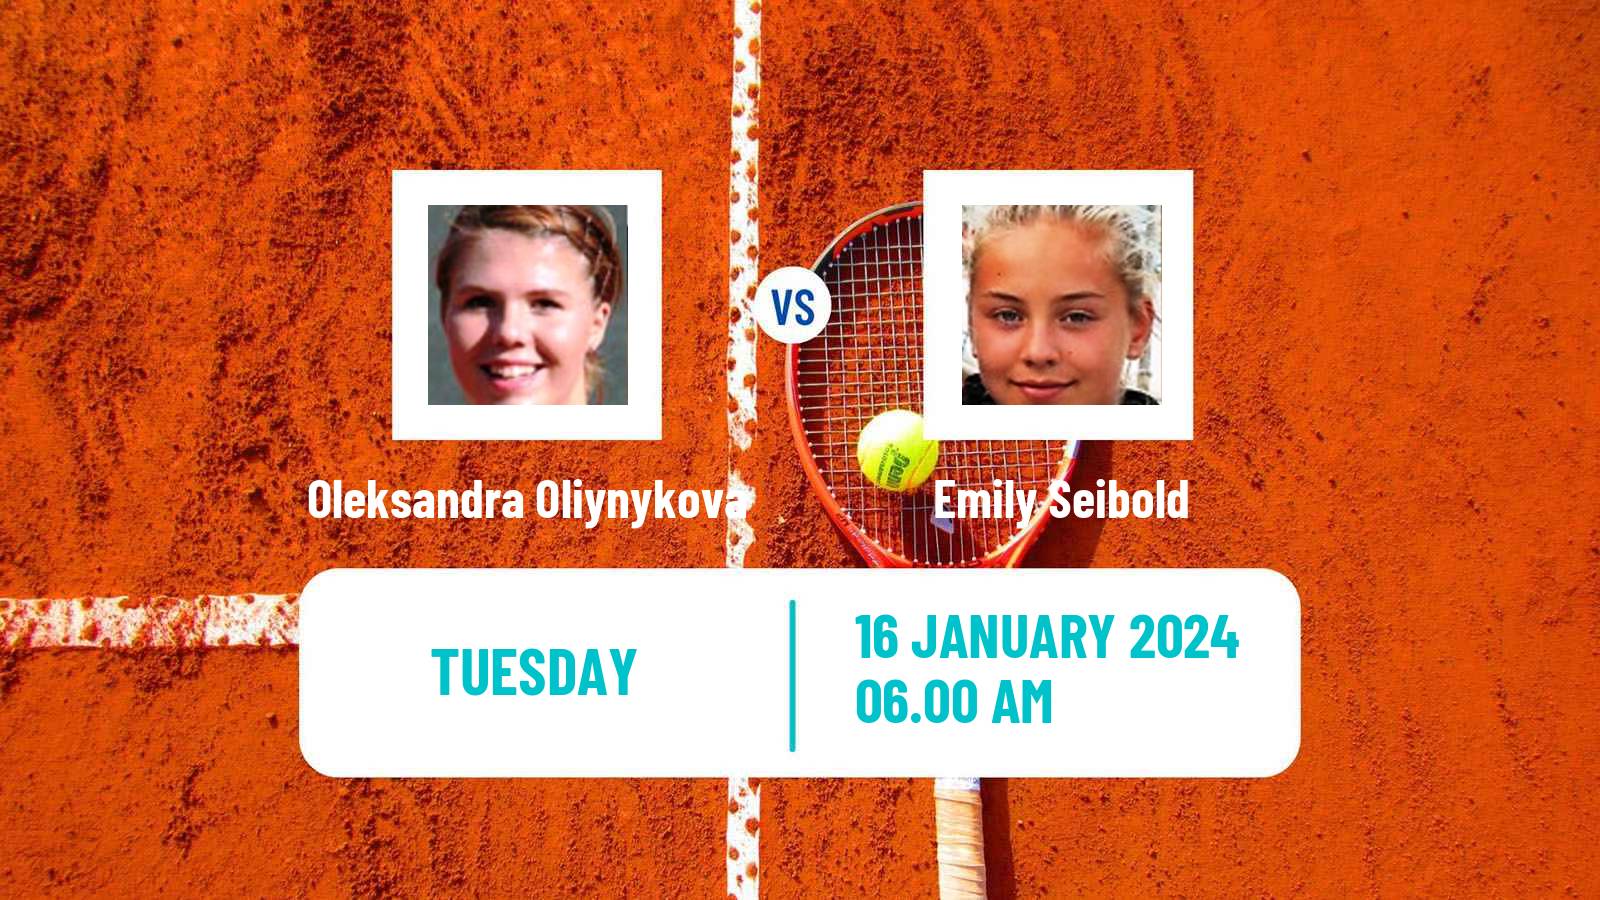 Tennis ITF W35 Sunderland Women Oleksandra Oliynykova - Emily Seibold